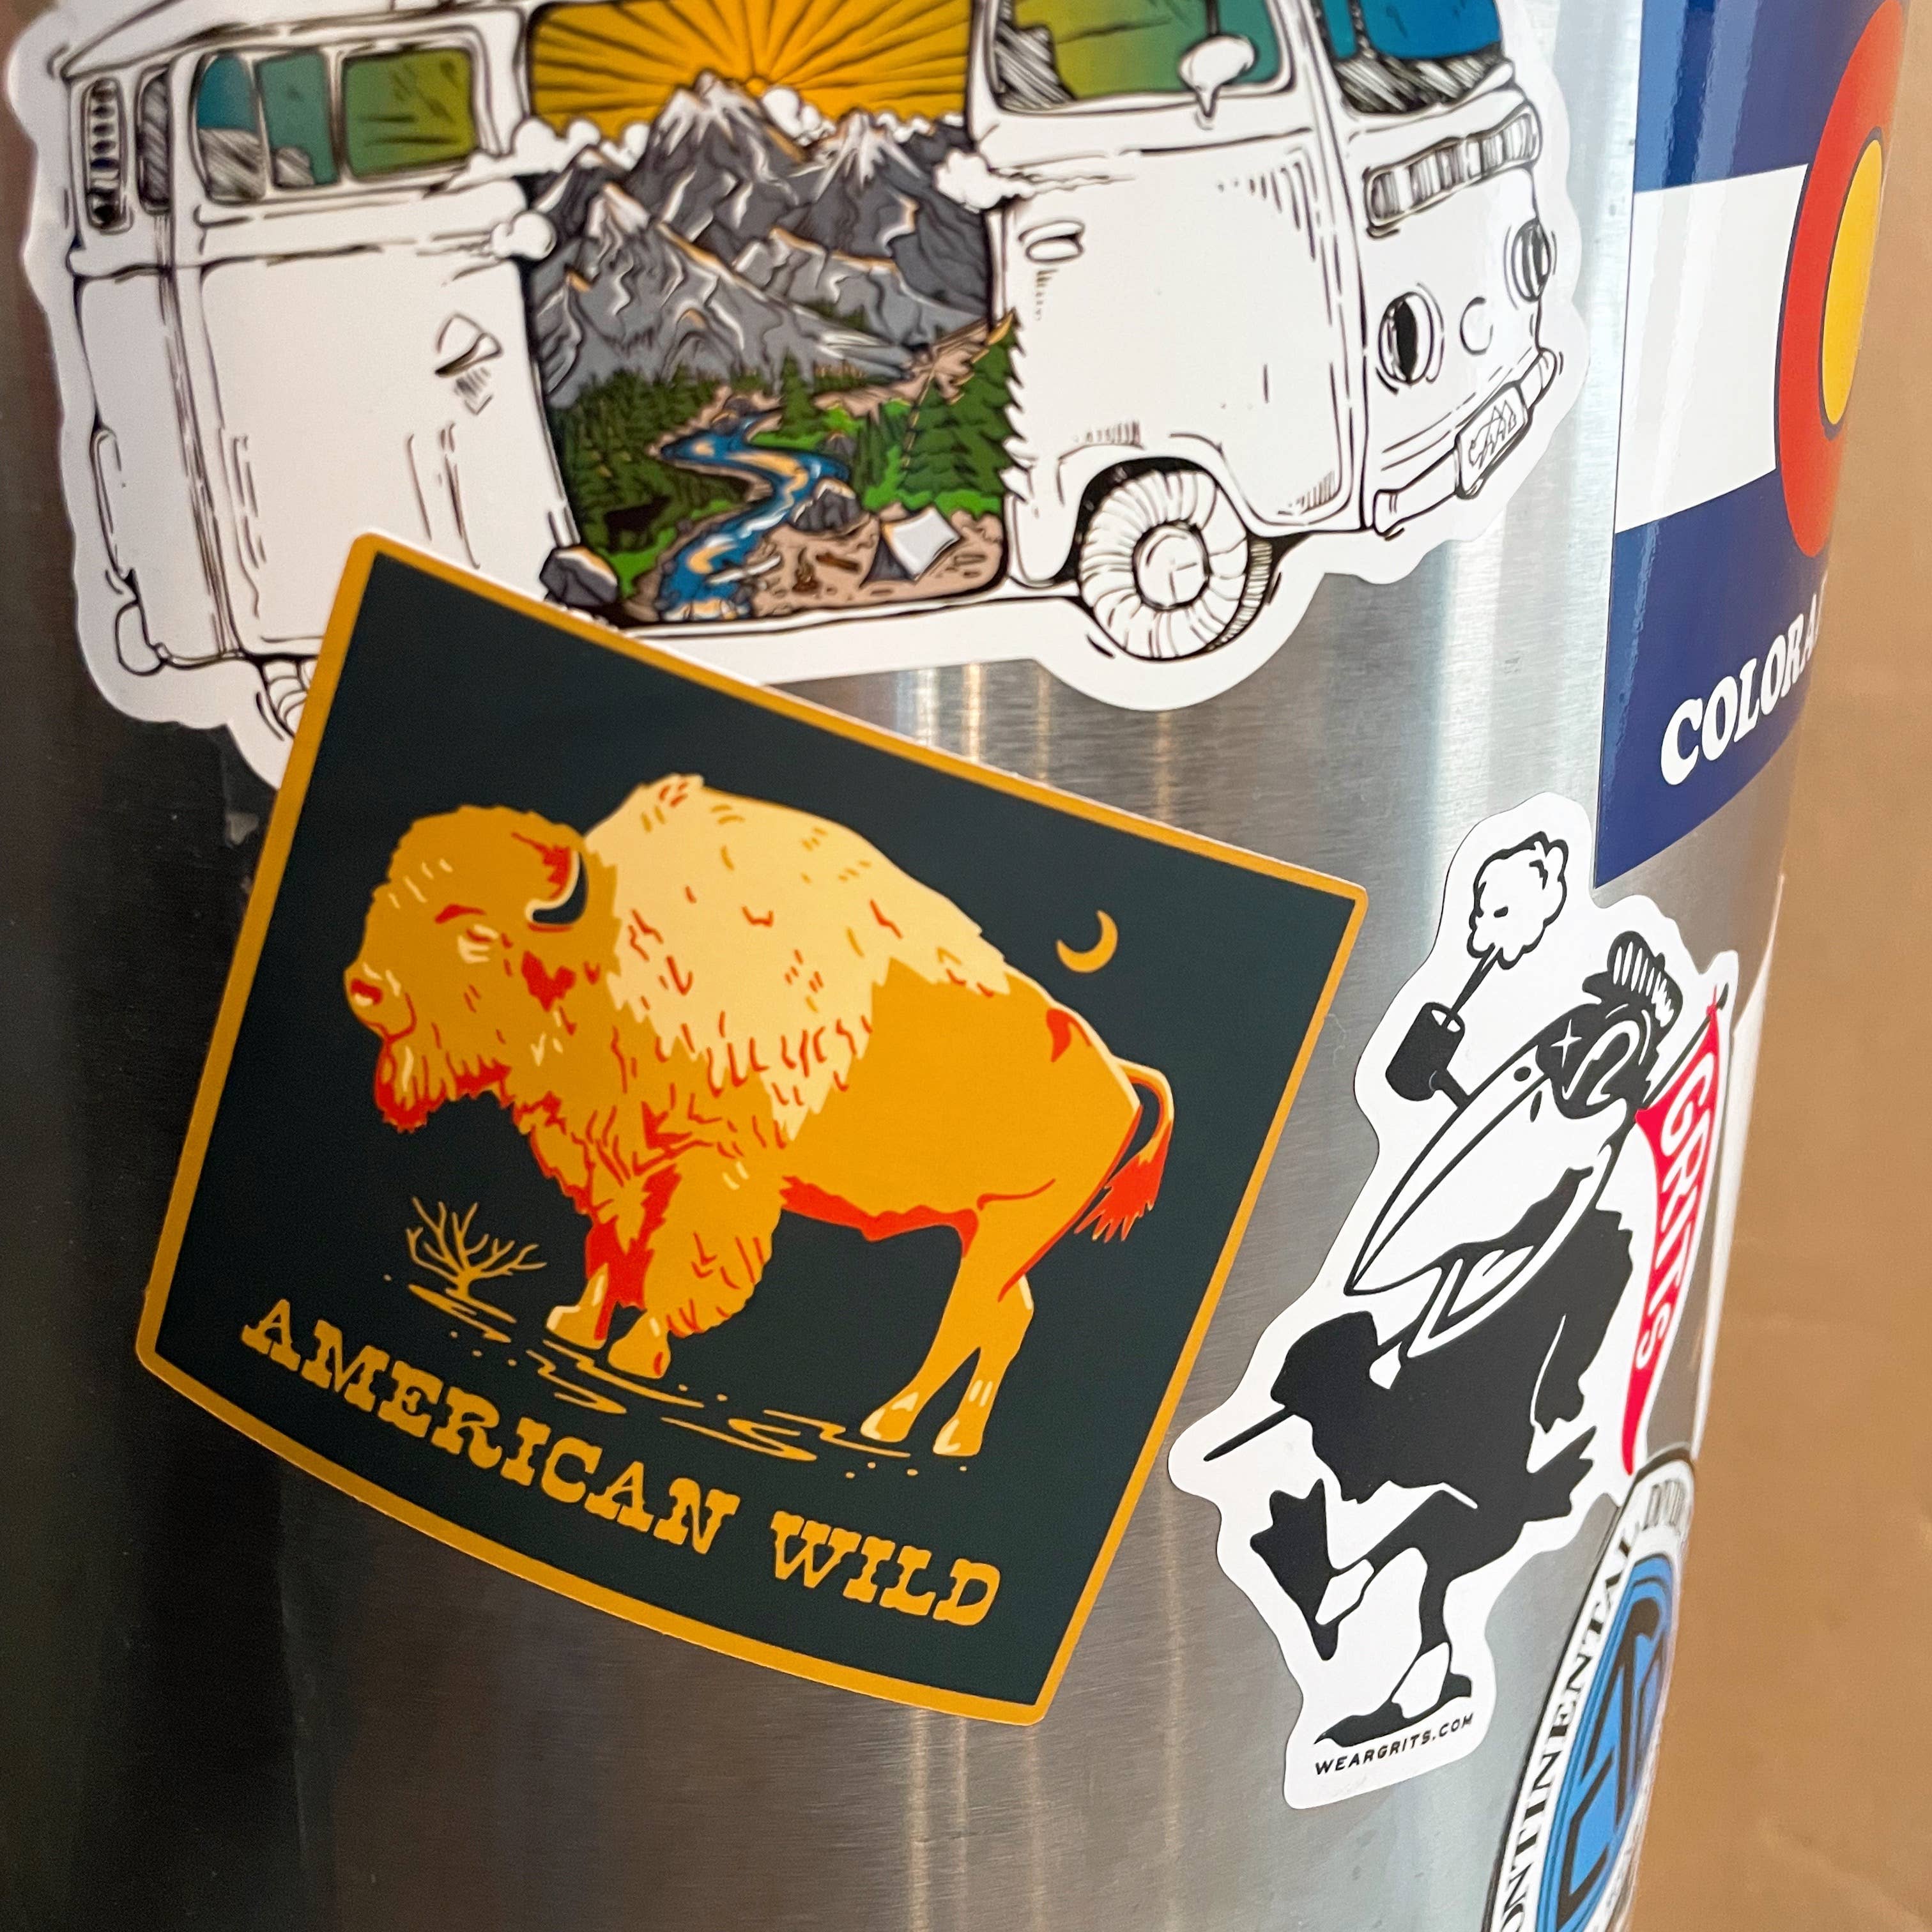 Caroline Clark - American Wild Bison Sticker